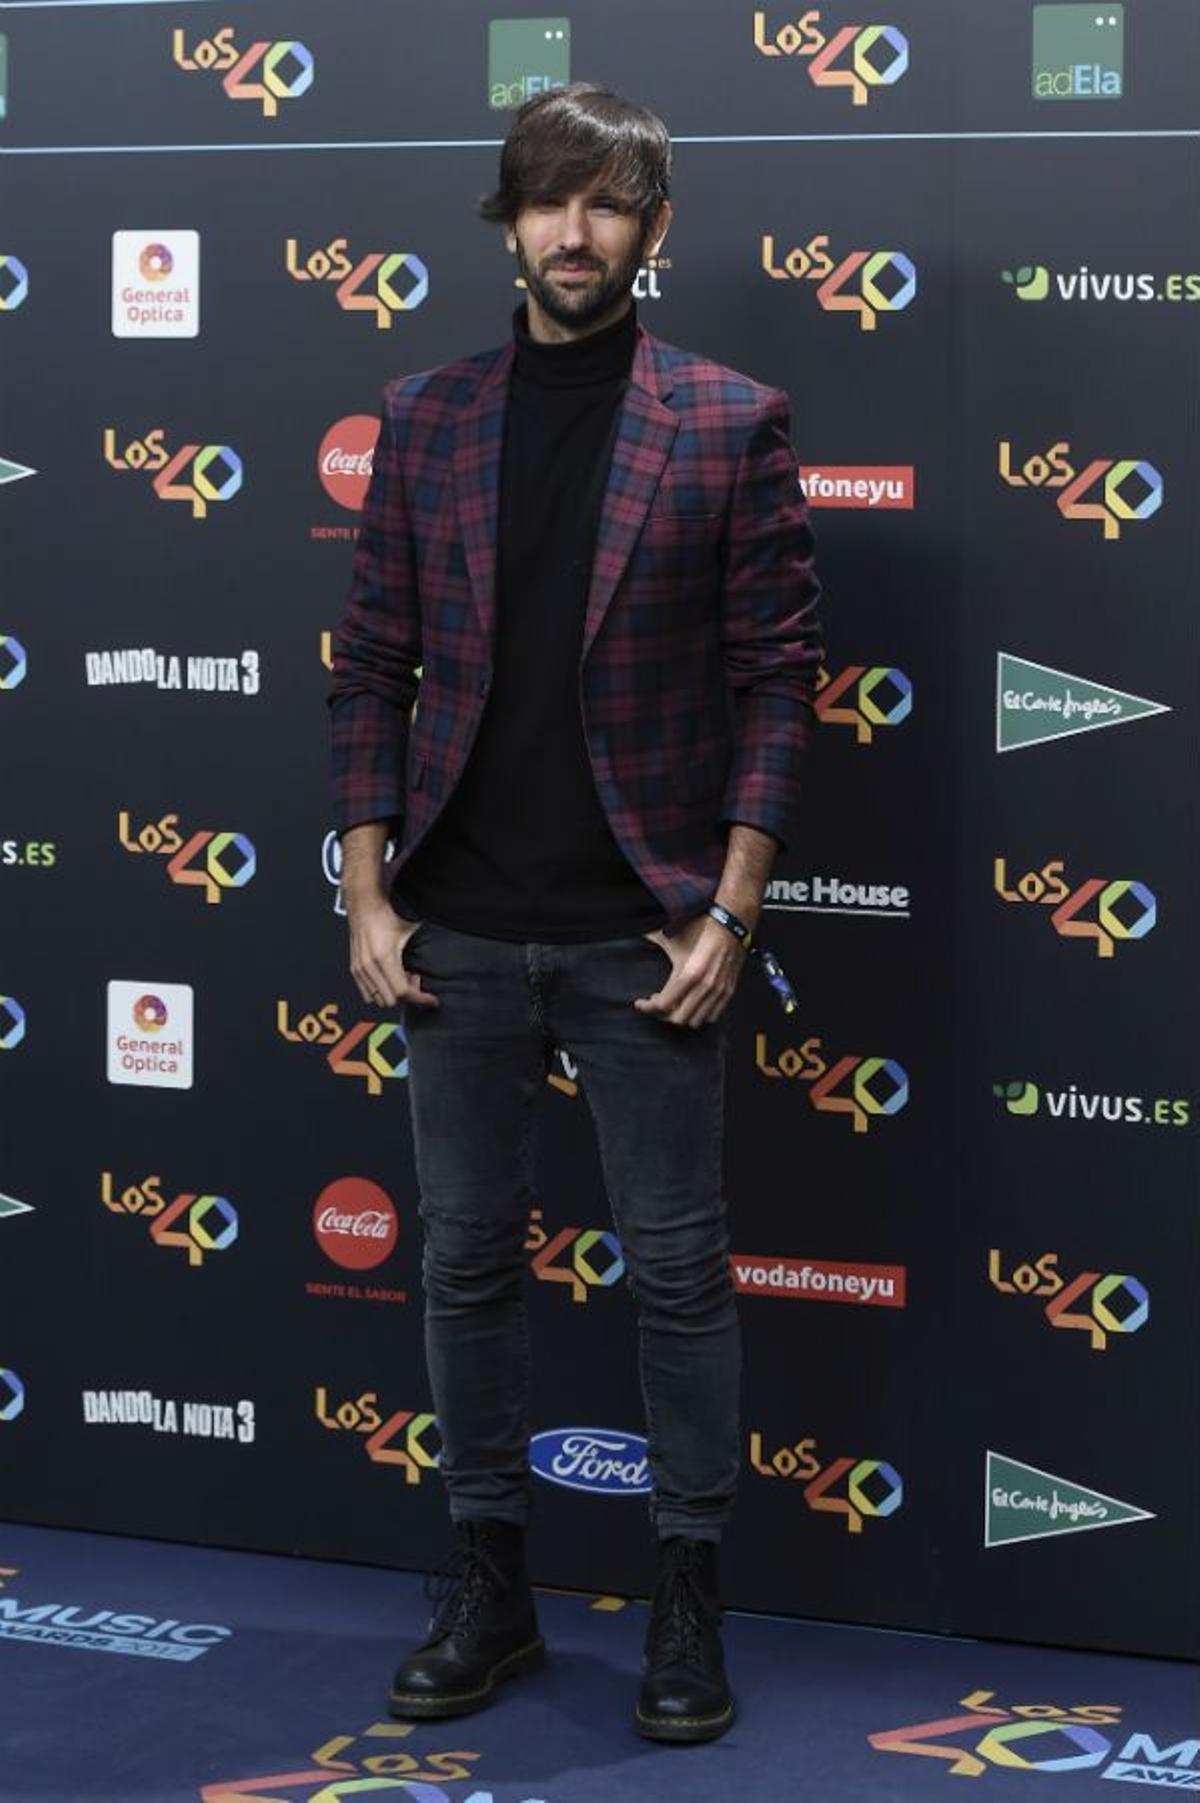 David Otero en Los 40 Music Awards 2017